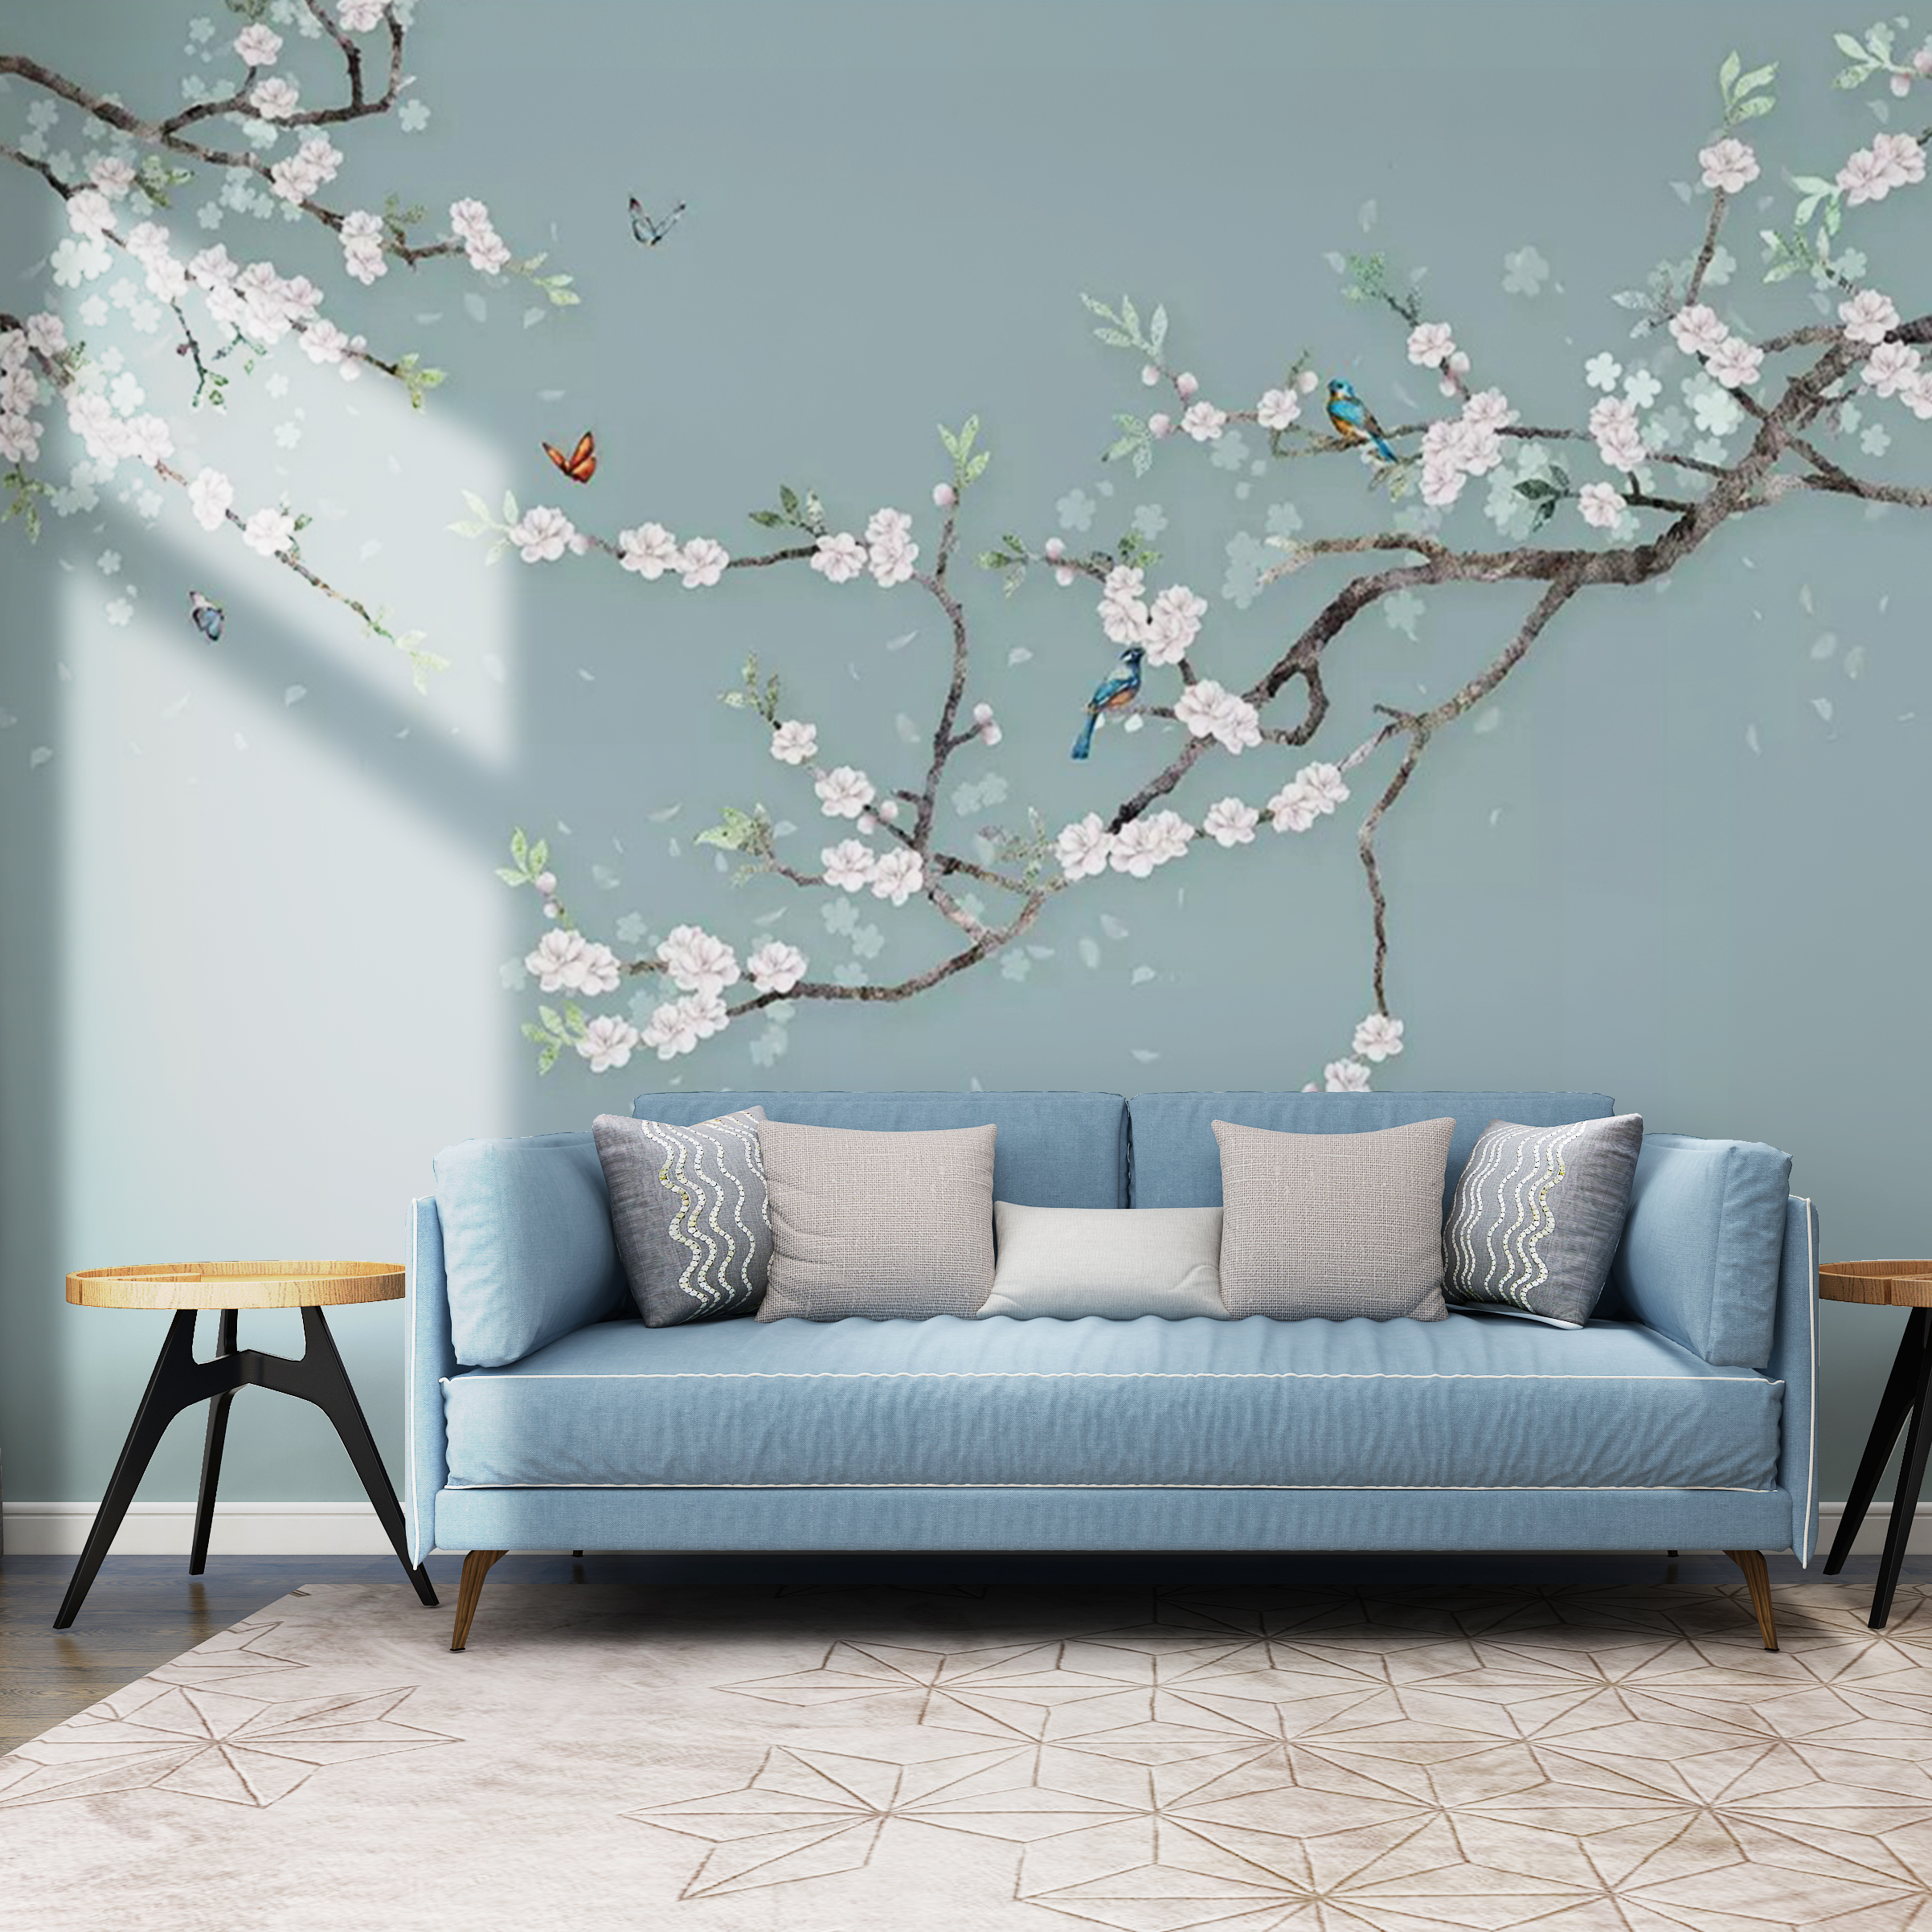 中式古典电视背景墙壁纸喜上眉梢花鸟卧室壁画客厅清新沙发墙布